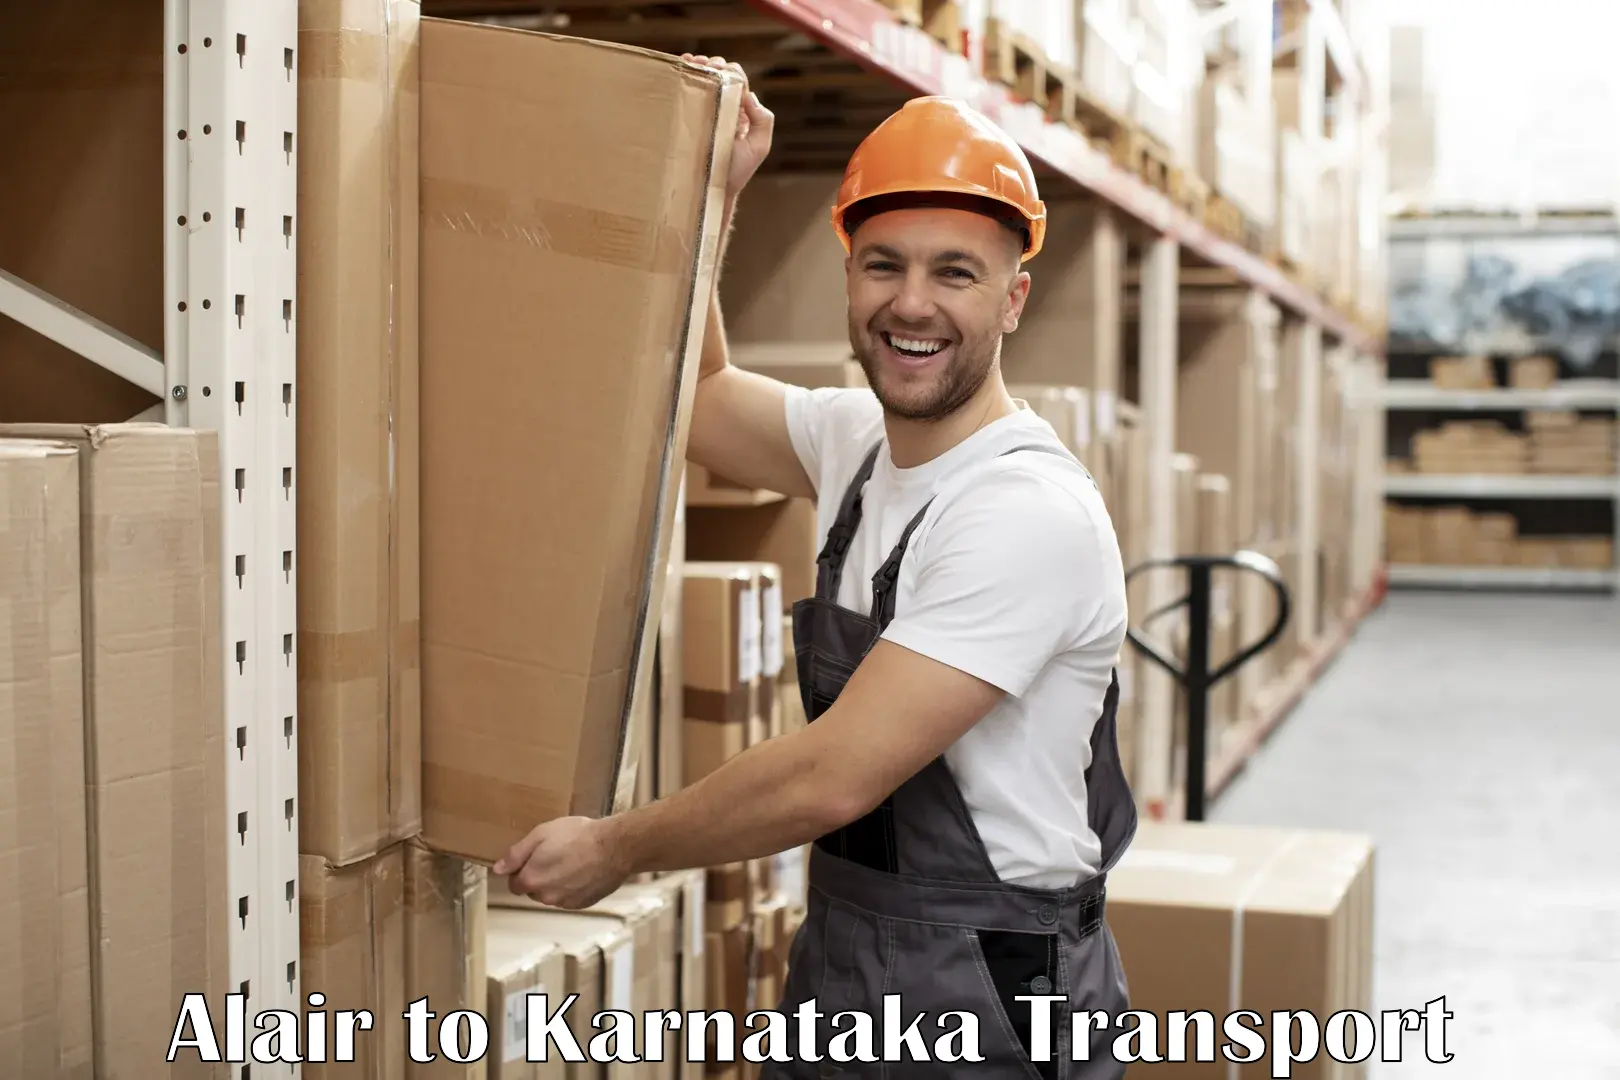 Container transport service Alair to Kalaburagi